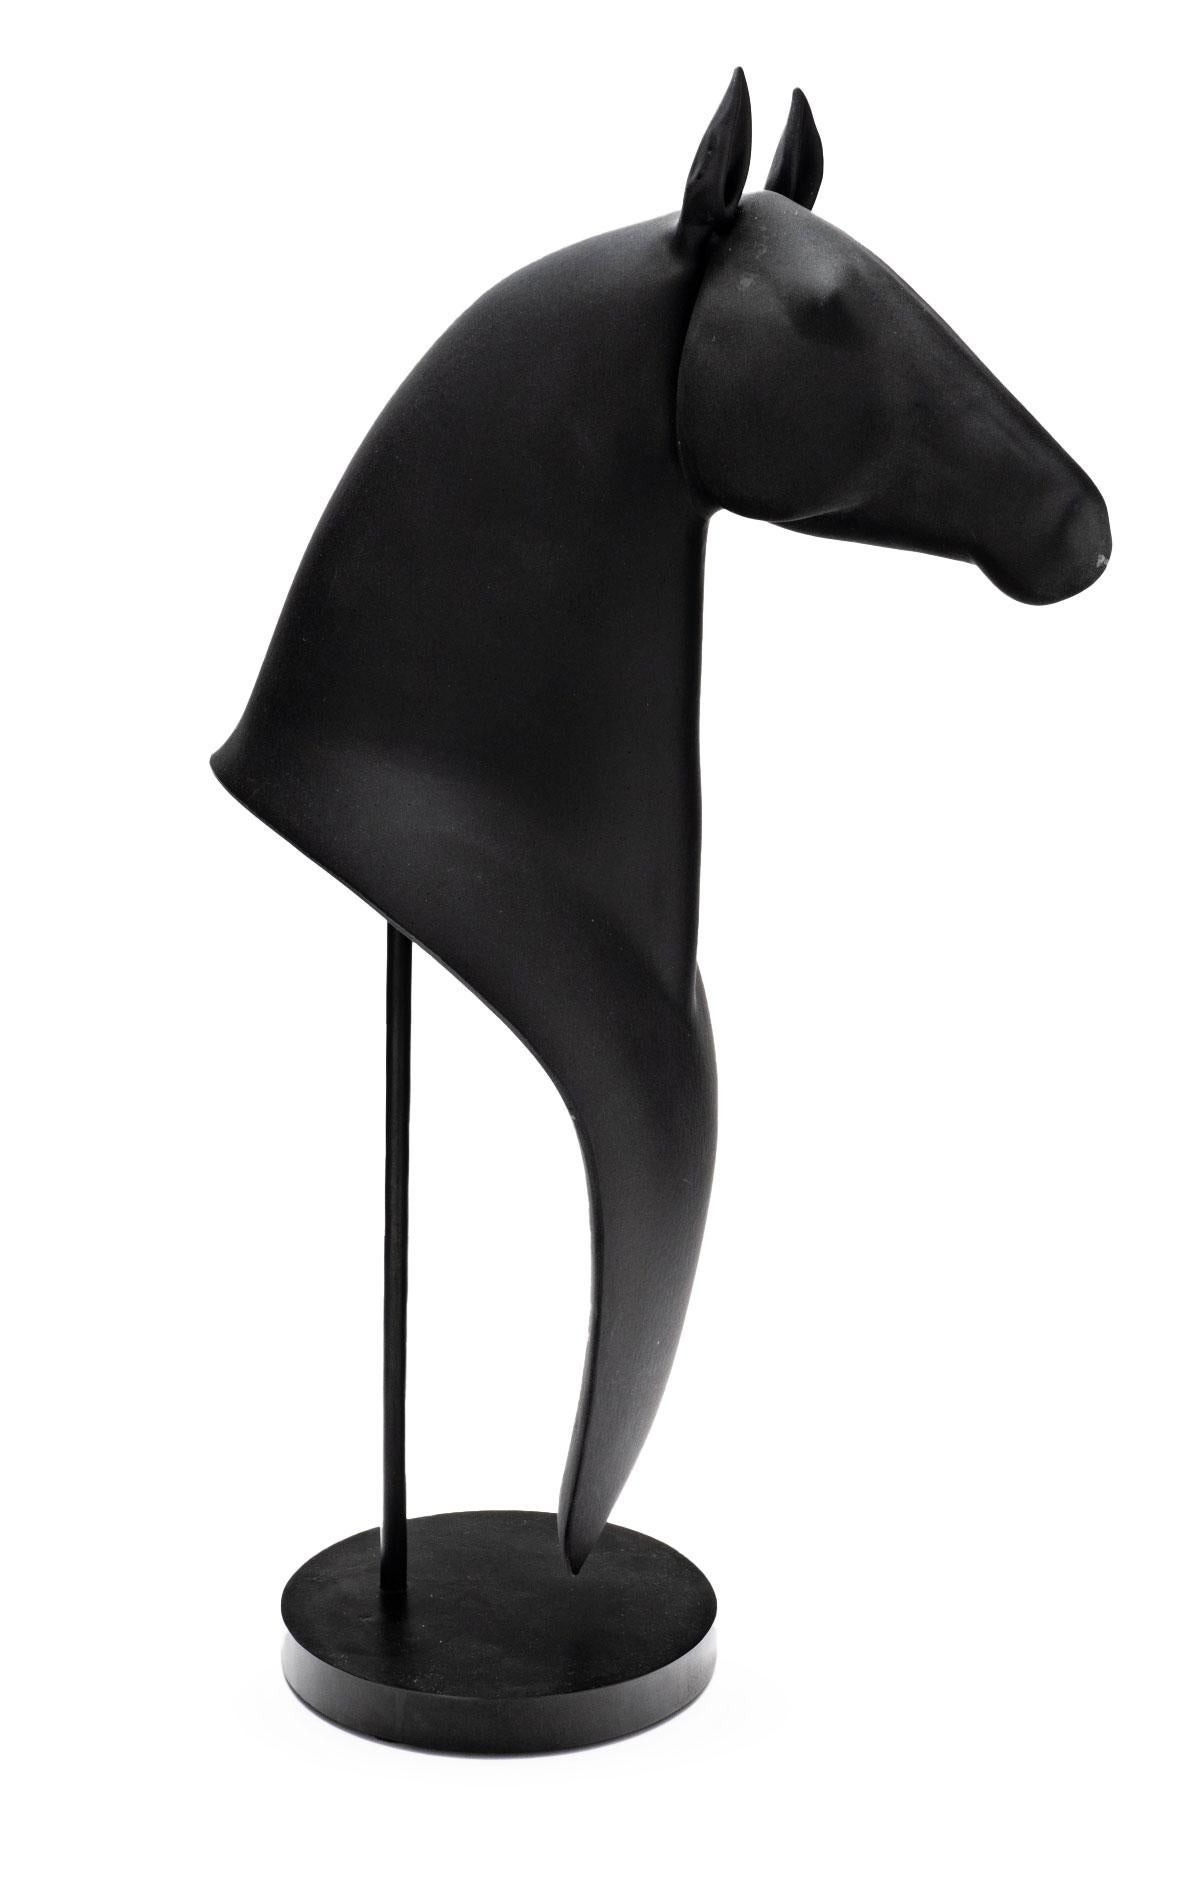 Jane's Horse (Negrita) - Modern Sculpture by Ross Richmond